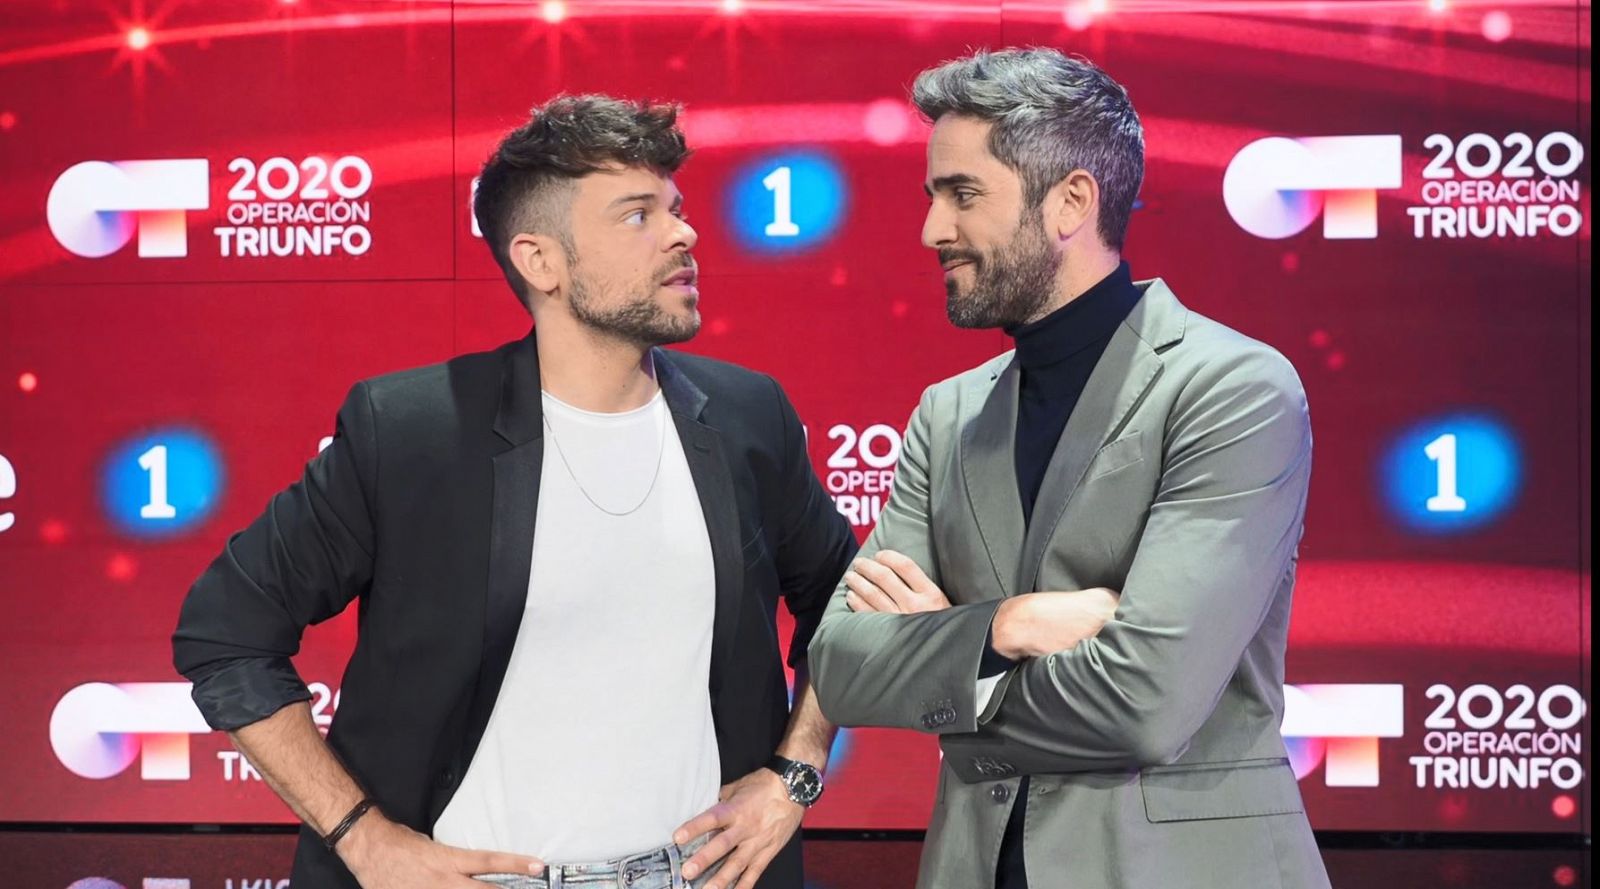 Ricky y Roberto, presentadores de El Chat y la gala de OT 2020 respectivamente